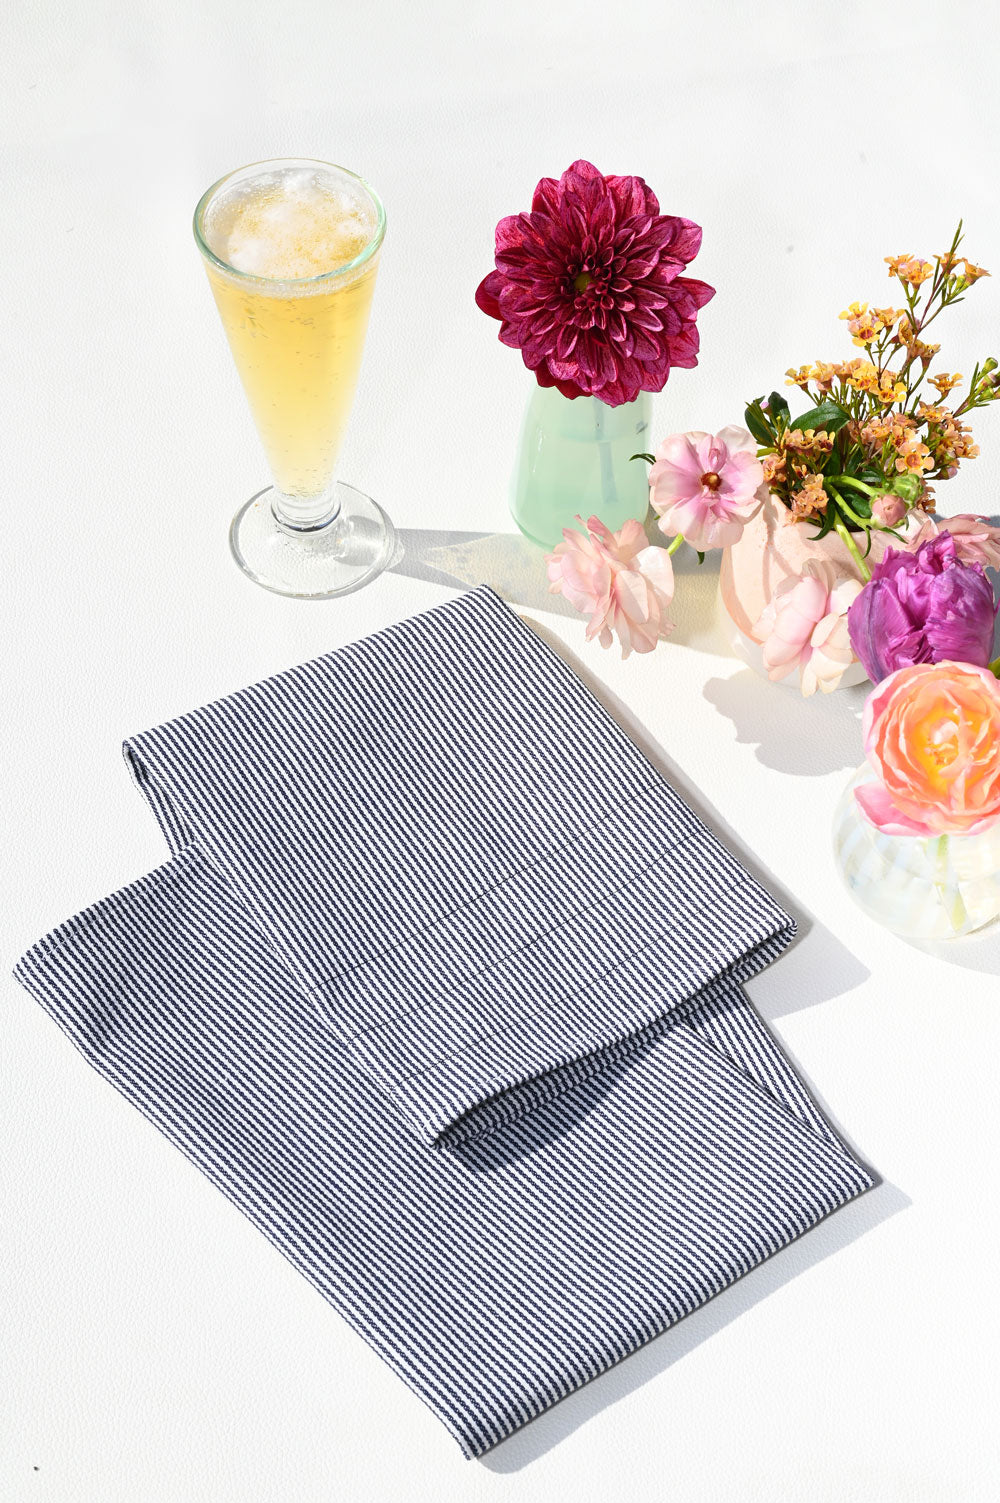 Hickory Stripe Tea Towels | Set of 2 TEA TOWELS ATELIER SAUCIER - Atelier Saucier